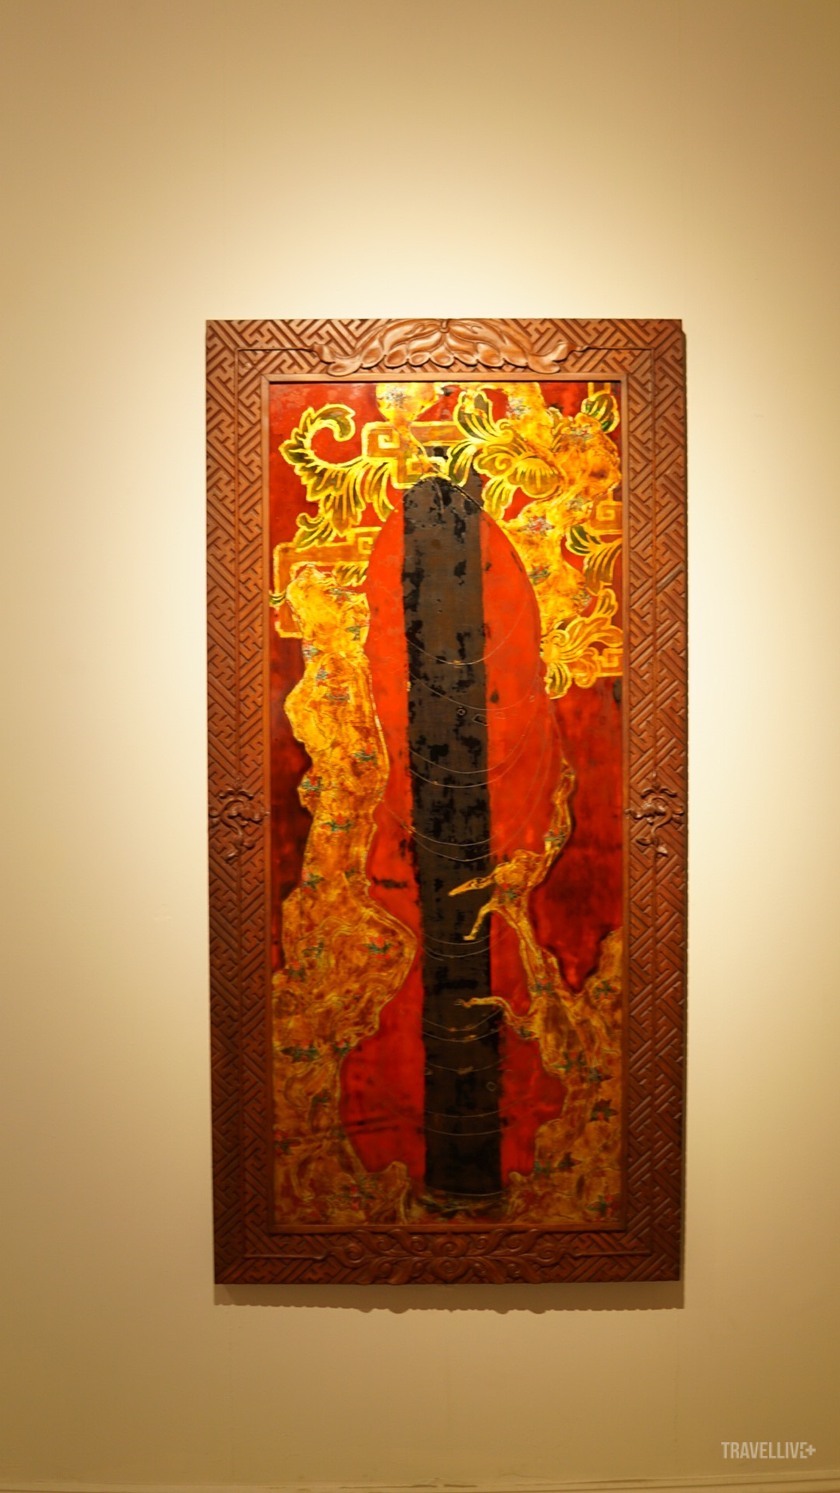 Hình tượng cái kén trong tranh của Nguyễn Hóa. Diễn tả mong muốn bứt phá, lột xác của nam họa sĩ đến từ xứ Huế